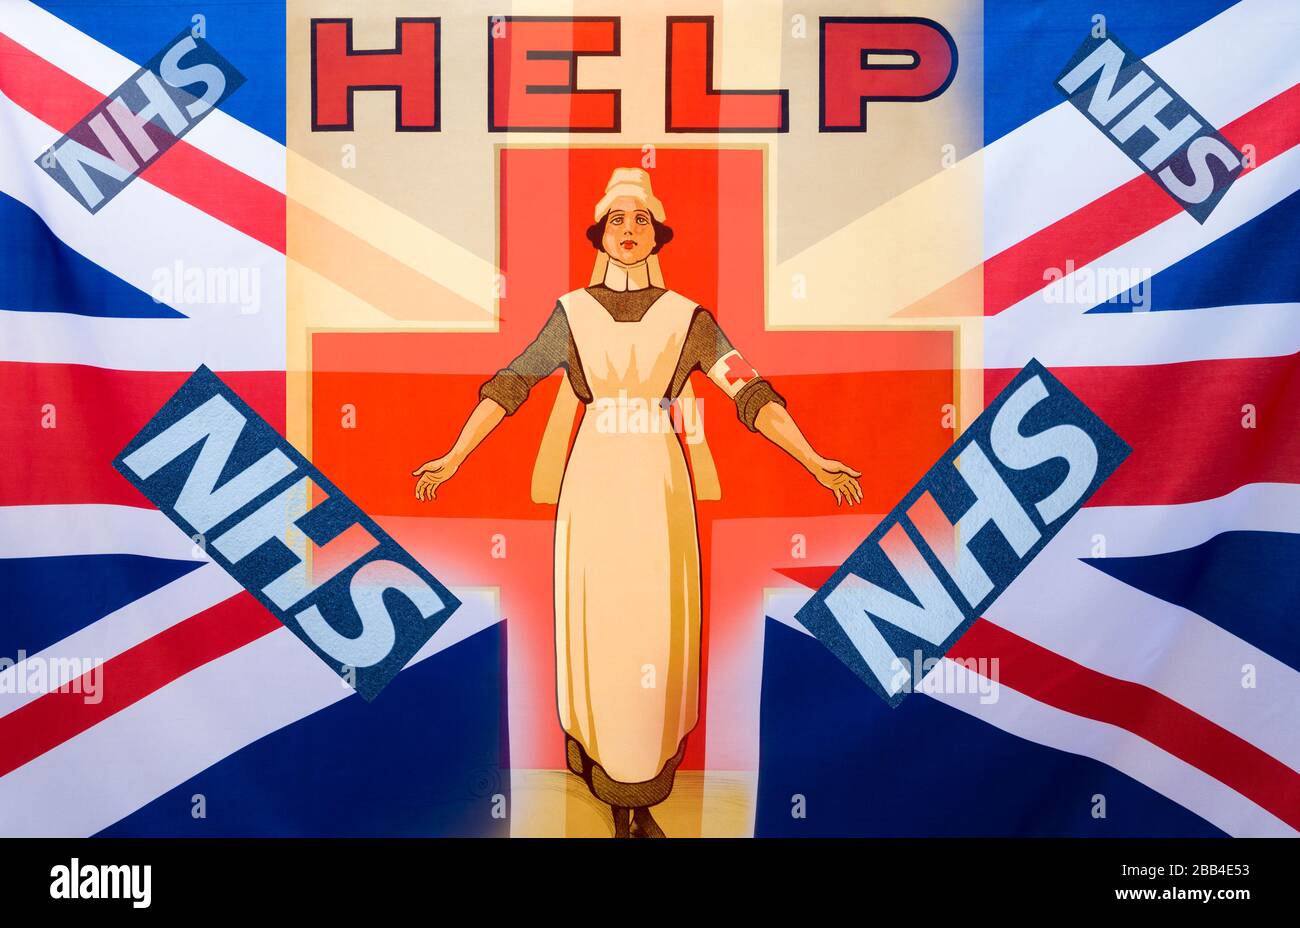 Image du logo de l'infirmière et du NHS (National Health Service) mélangé au drapeau britannique Union Jack. Infirmière, pénurie d'infirmières, financement du NHS, Coronavirus... Concept Banque D'Images